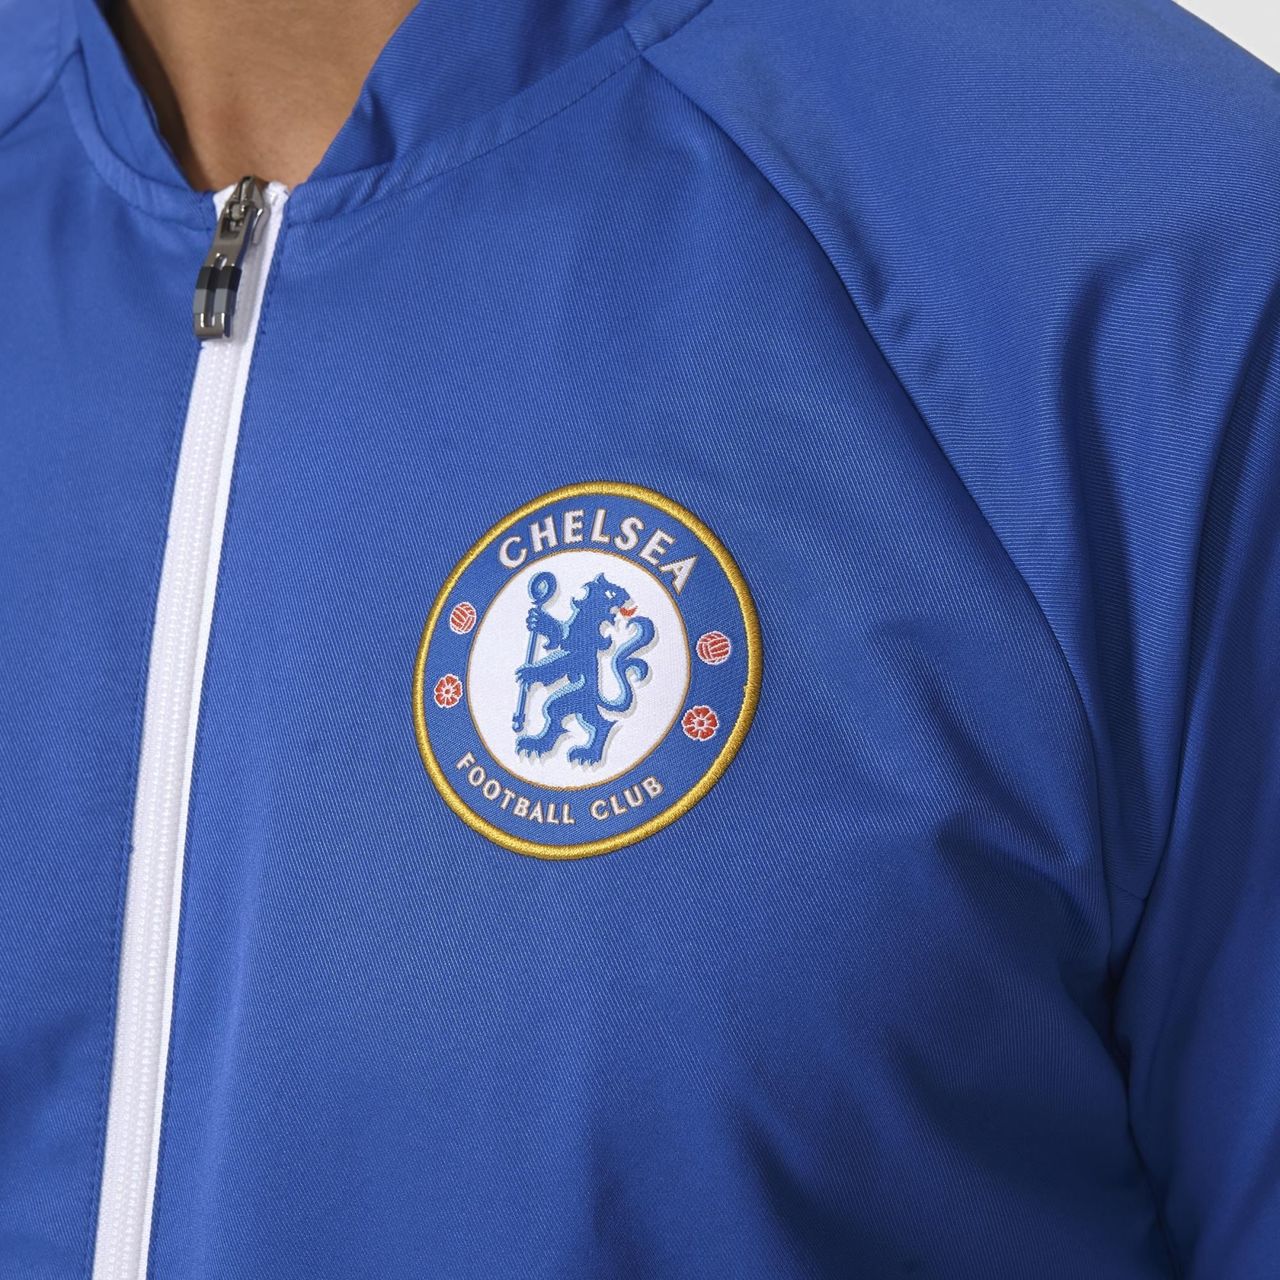 Adidas Chelsea FC Anthem Jacket - Chelsea Blue / White - Football Shirt ...